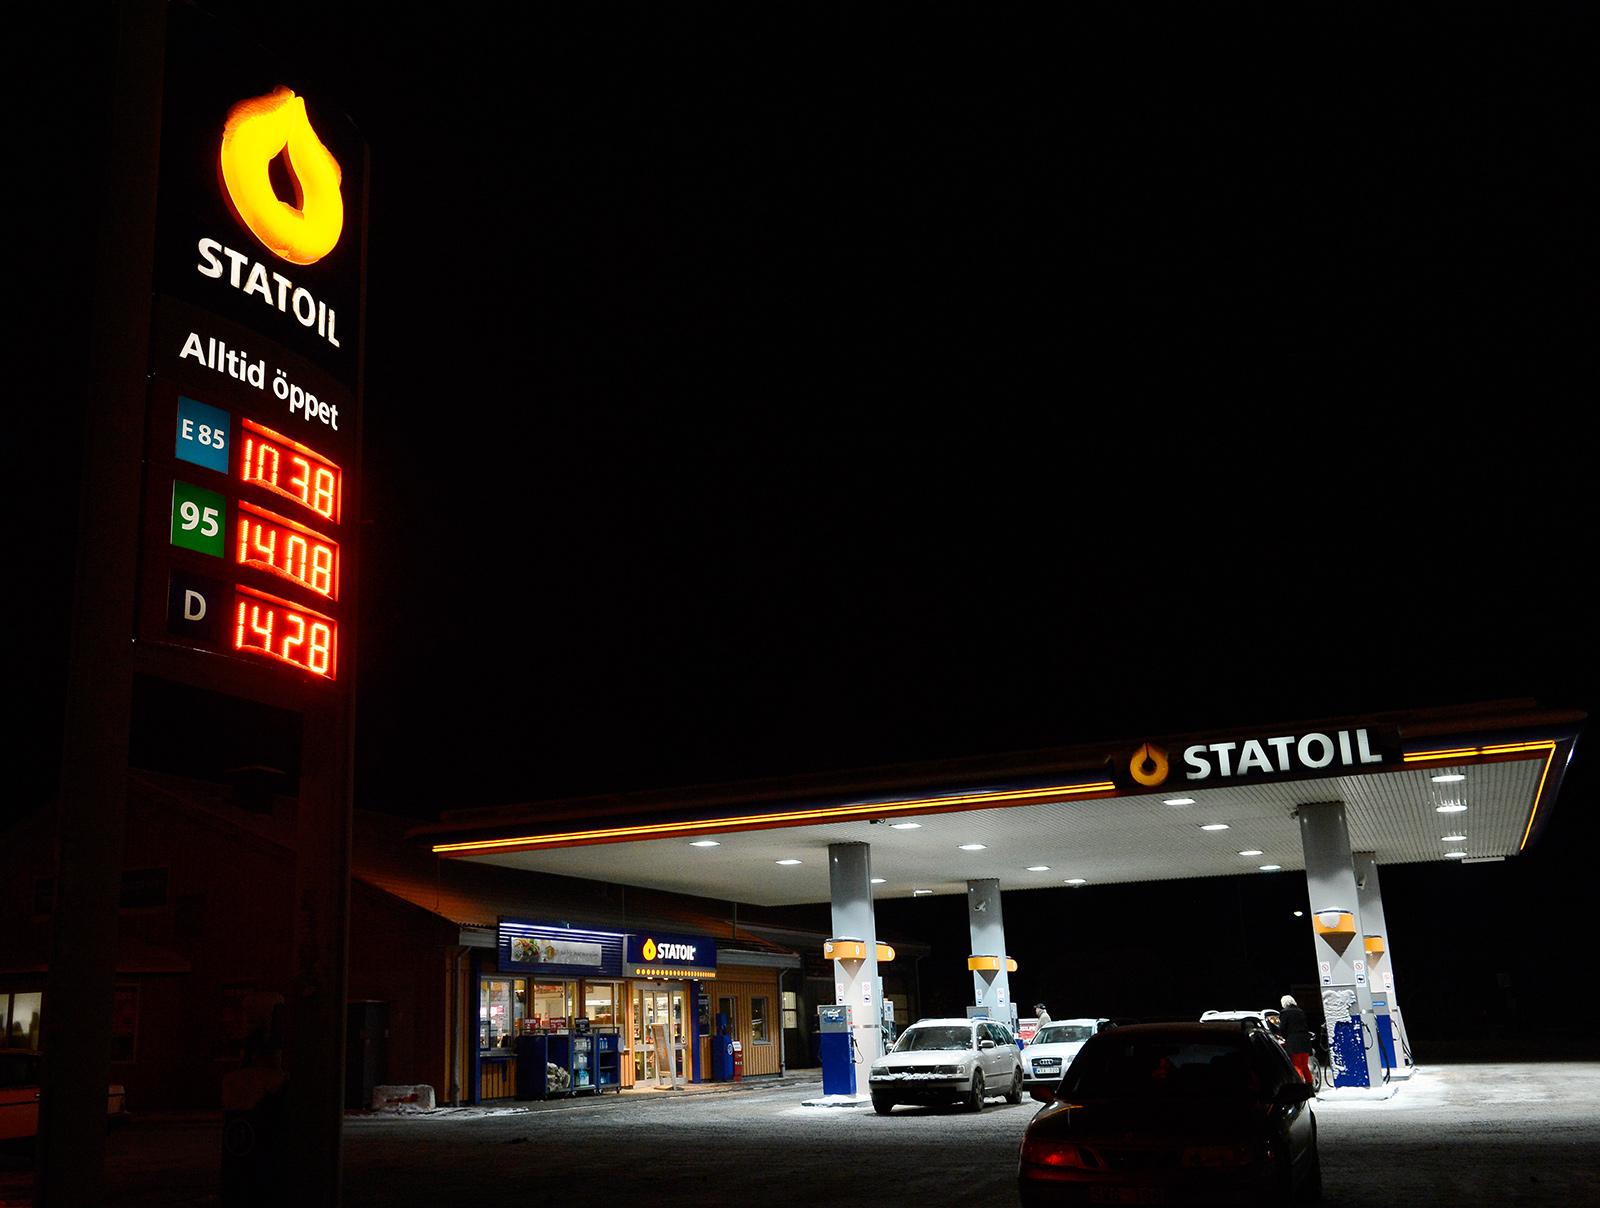 Bensinpriset närmar sig 15 kronor igen. Bilden tagen i december 2012, då bensinpriset låg närmare 14 kronor litern.